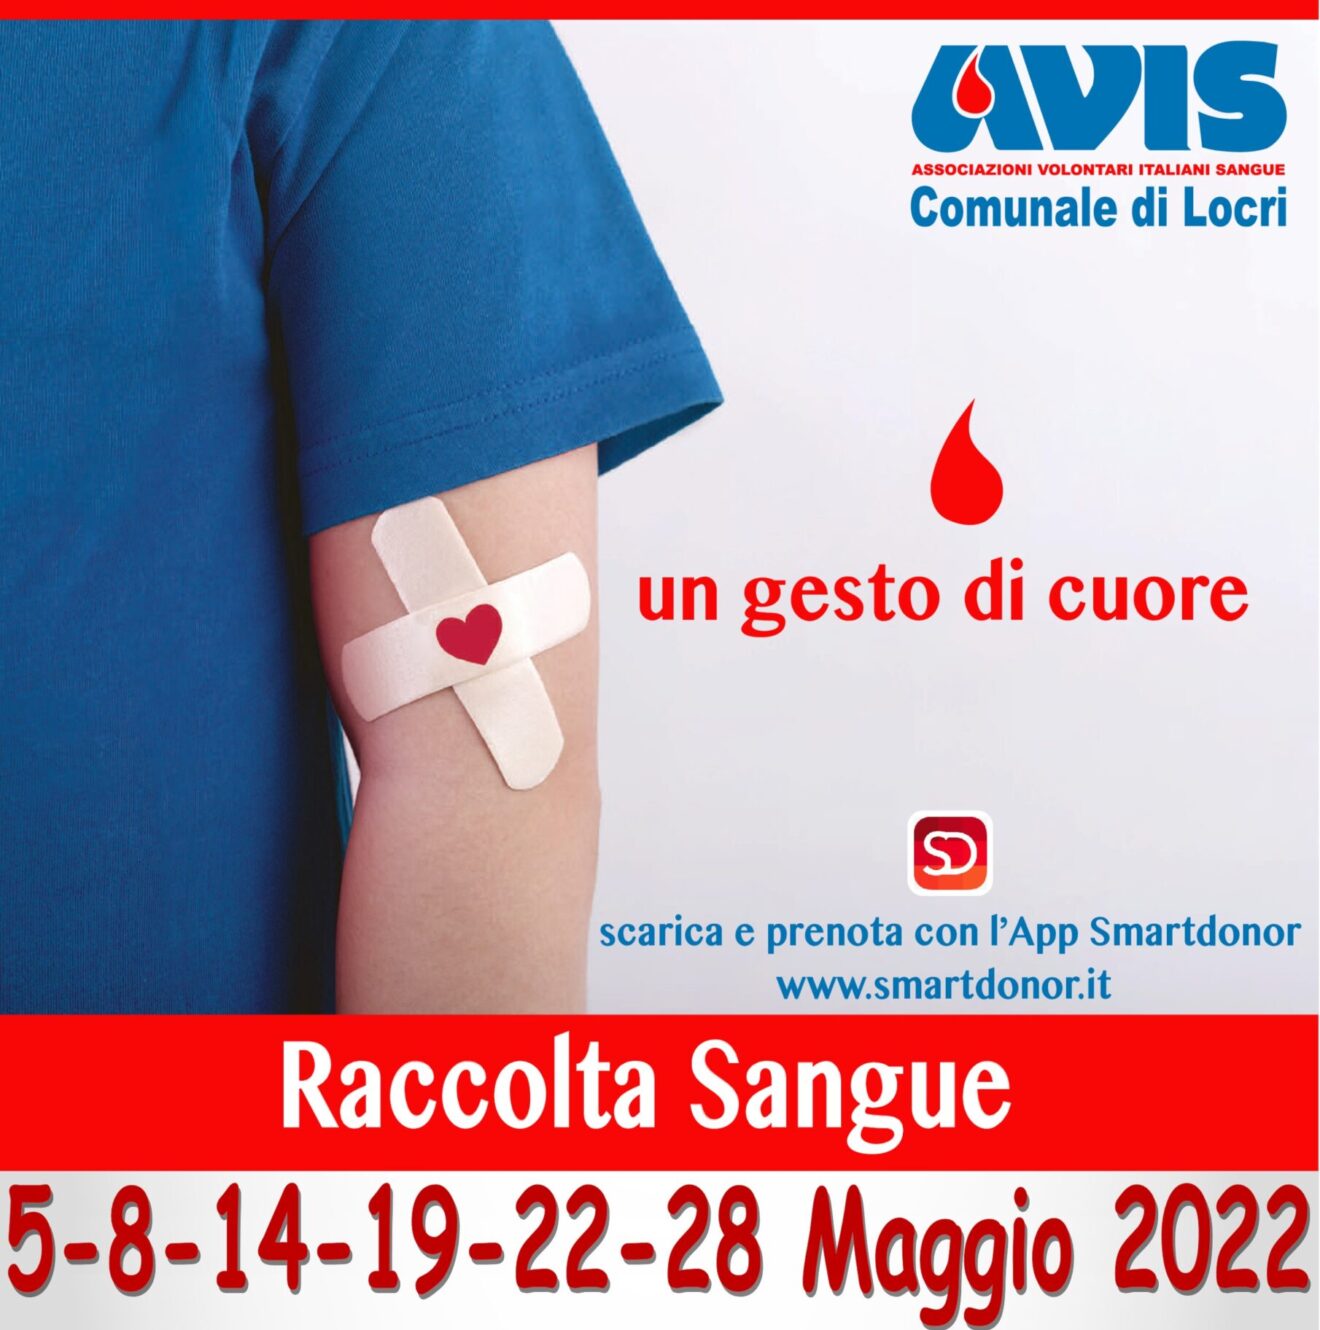 L’AVIS Comunale di Locri comunica le date delle raccolte di sangue per il mese di maggio 2022